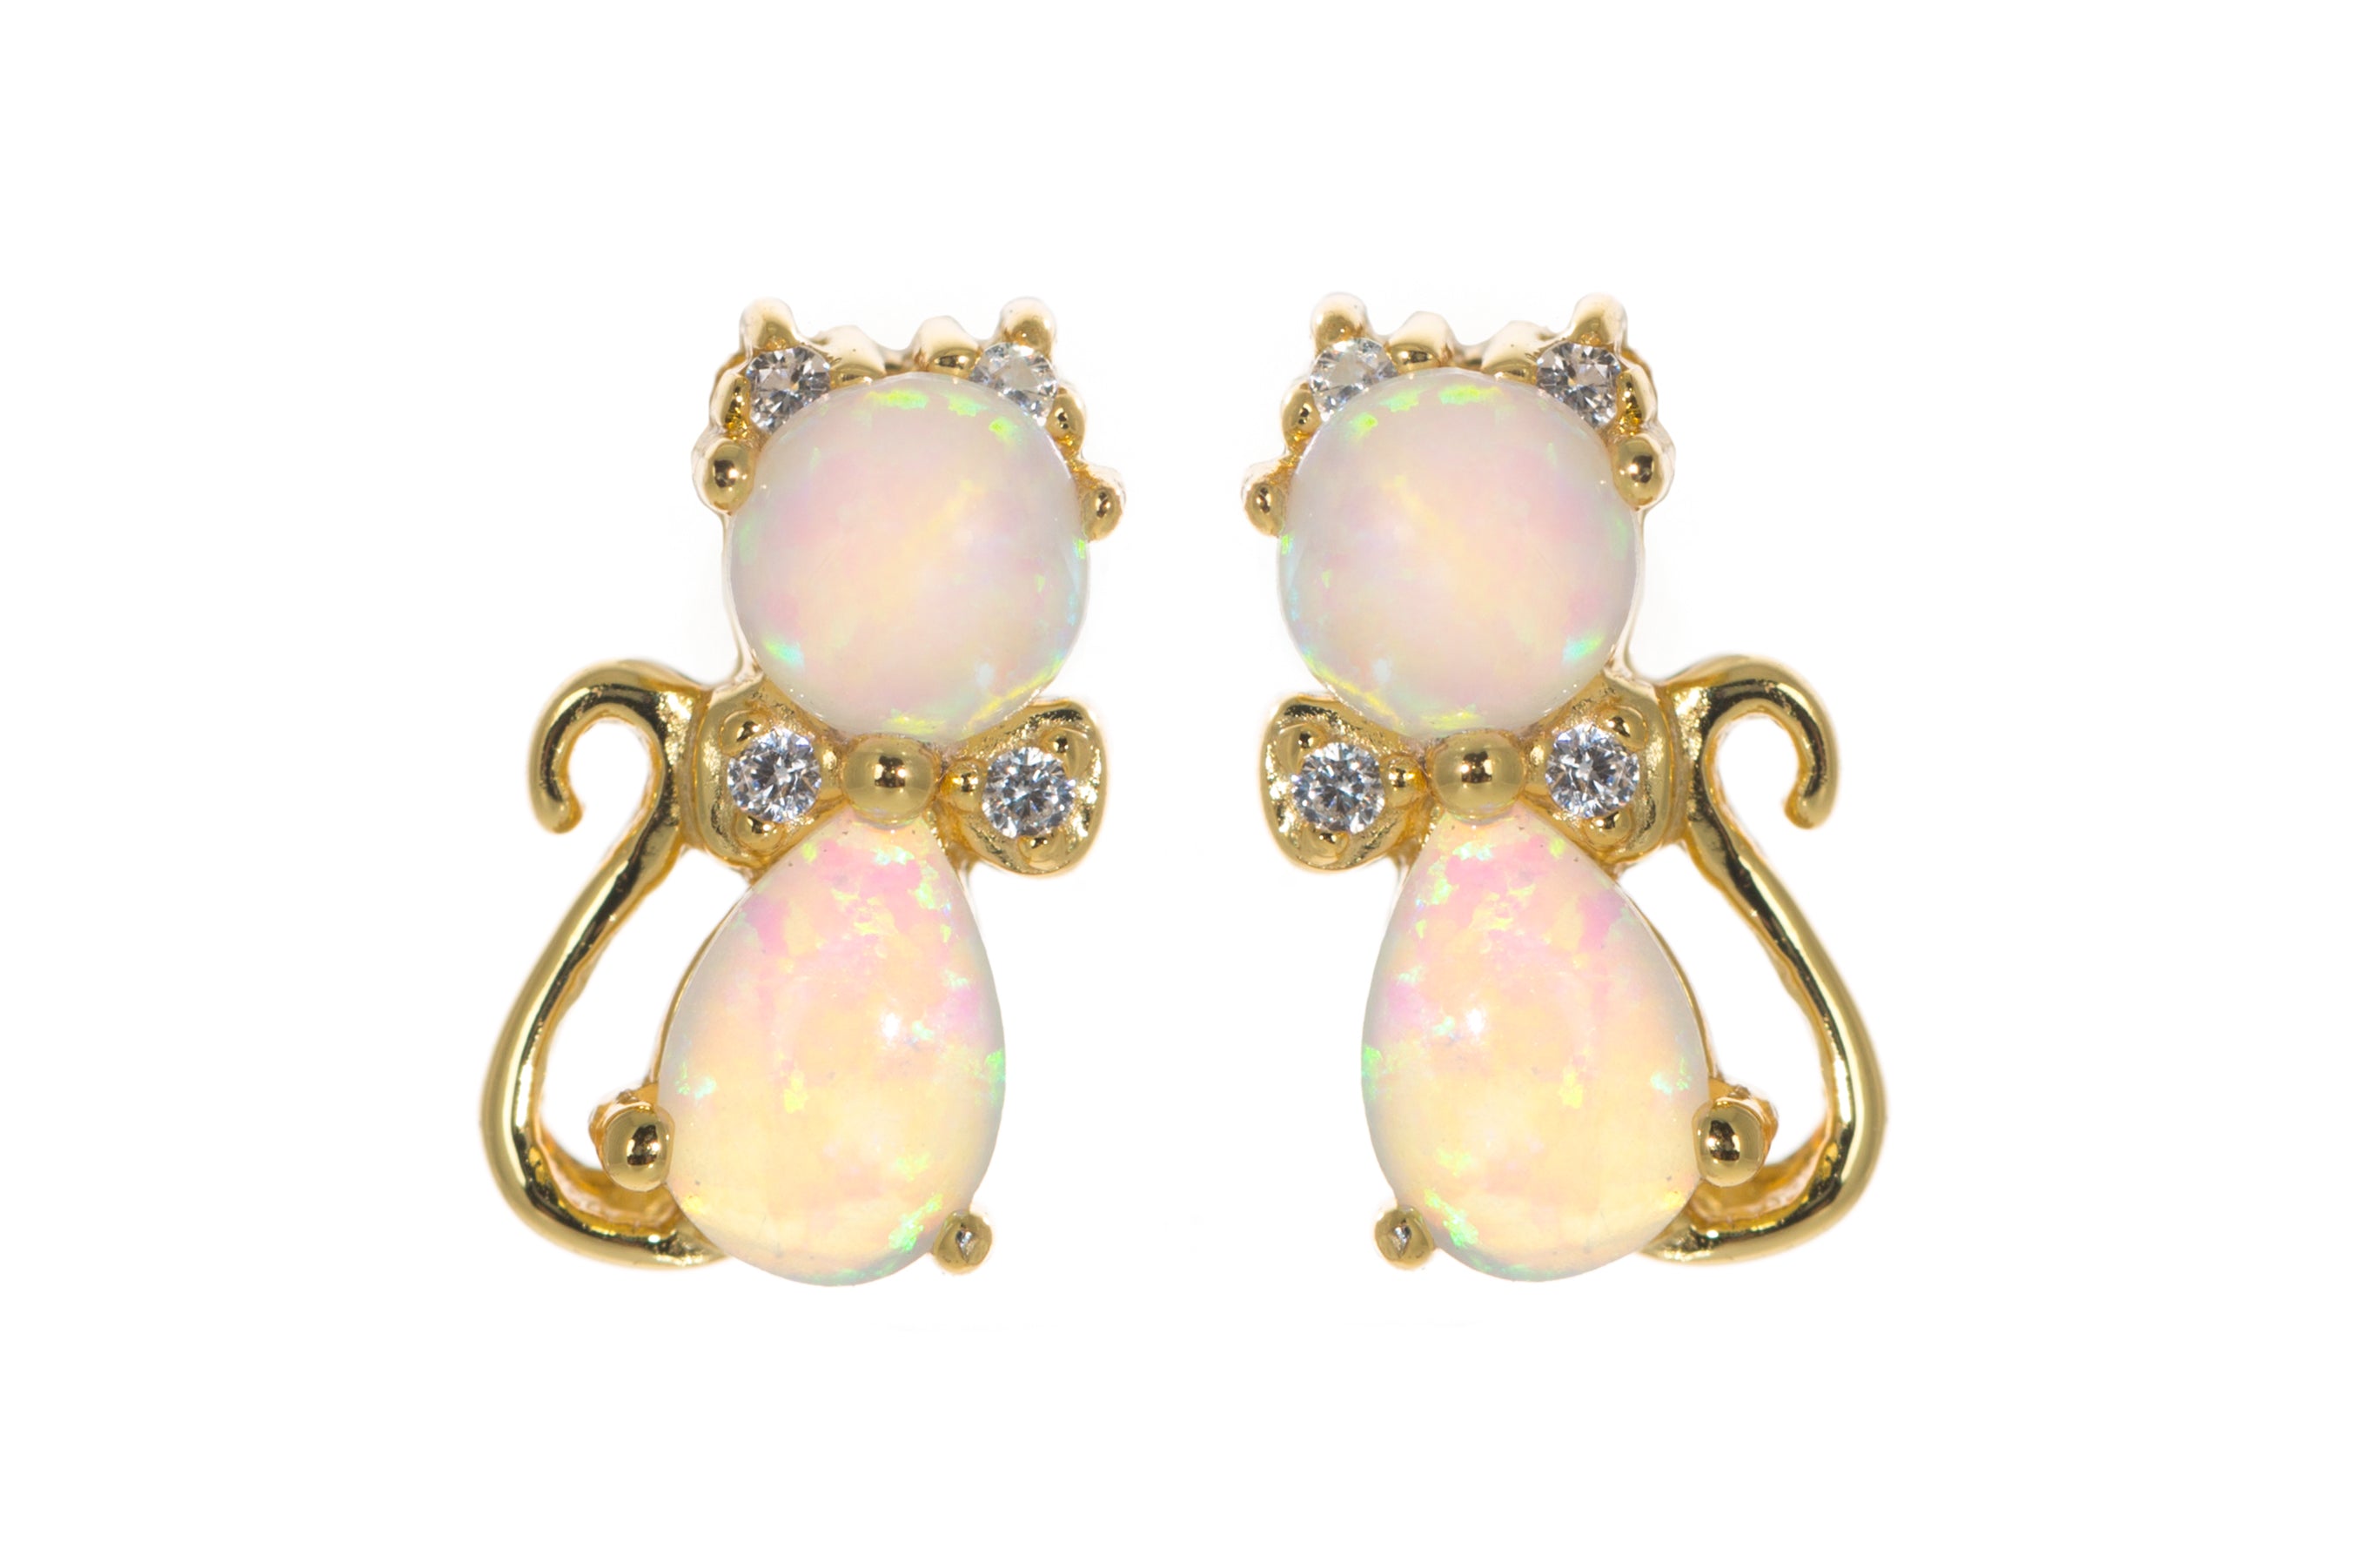 Opal cat earrings